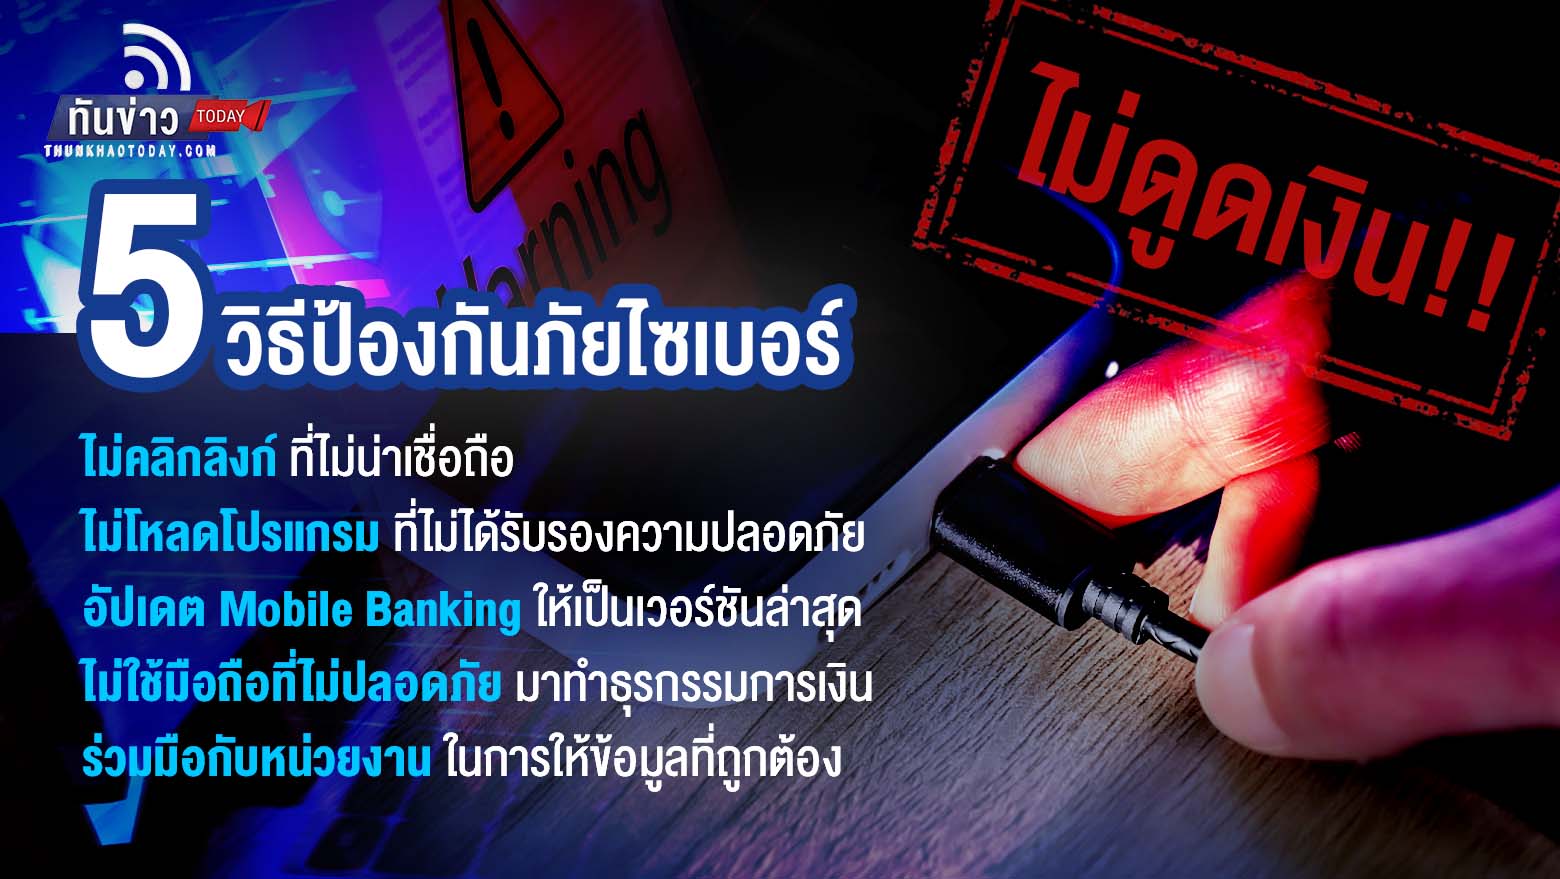 “ธนาคารแห่งประเทศไทยชี้แจง สายชาร์จปลอมดูดข้อมูลและโอนเงินออกจากบัญชี ไม่จริง!! แต่เกิดจากถูกมิจฉาชีพหลอกติดตั้ง แอปปลอมที่แฝงมัลแวร์